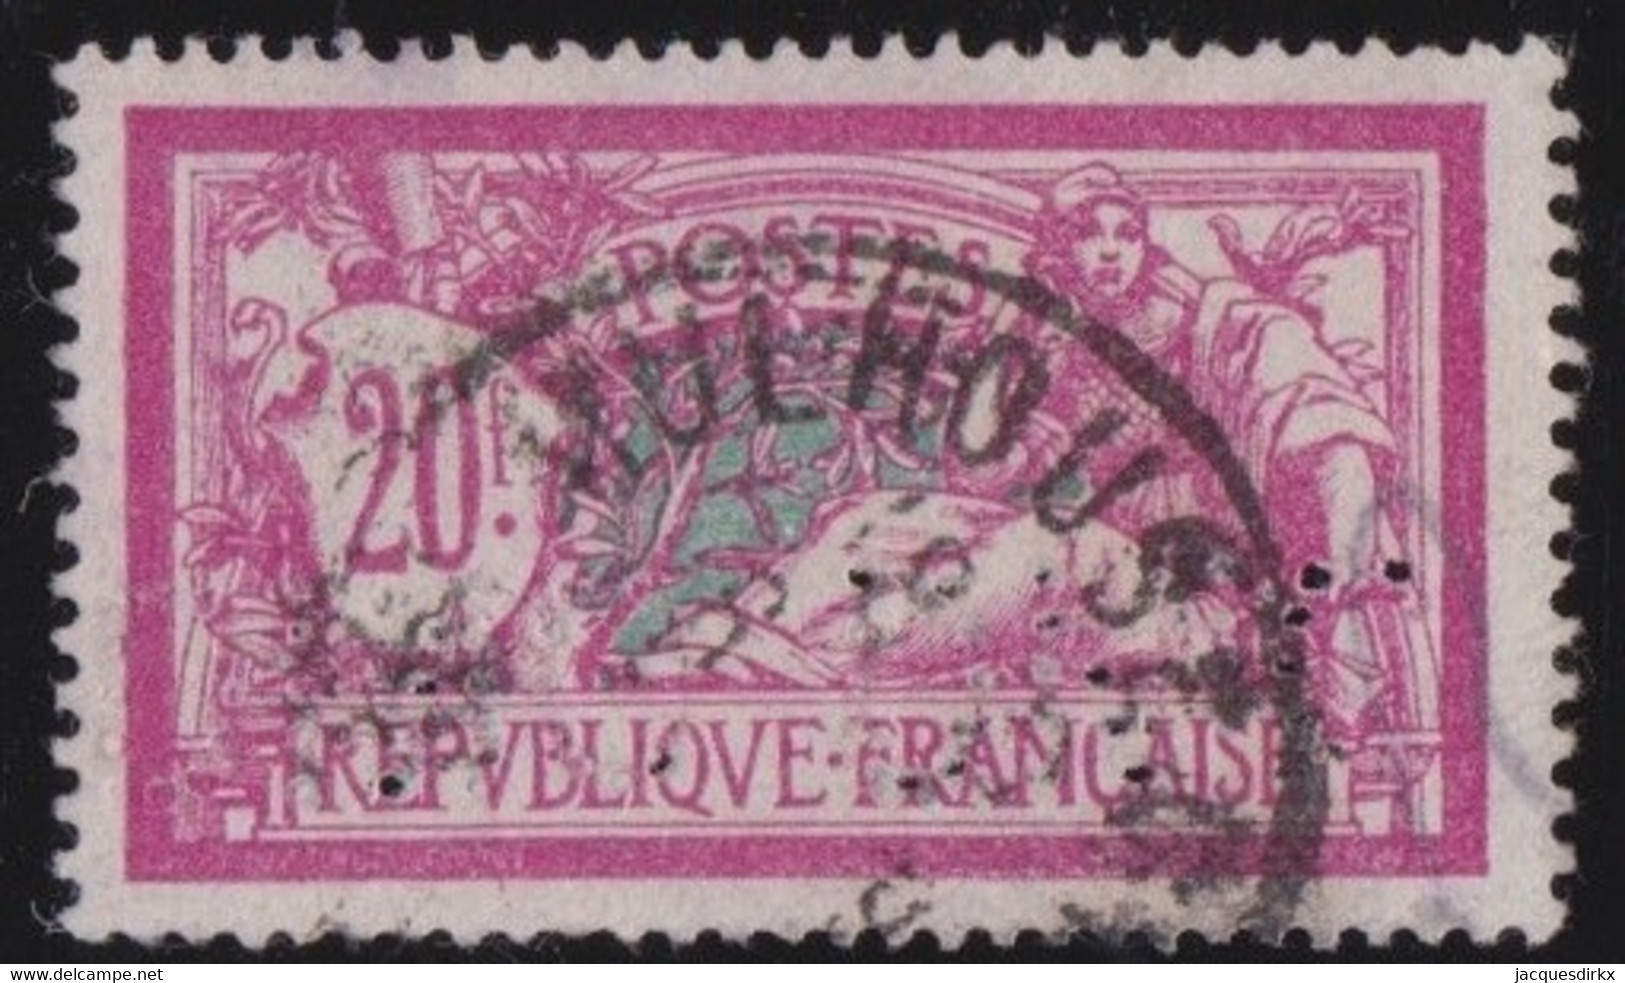 France   .    Y&T   .    208       .     O     .      Oblitéré - 1900-27 Merson